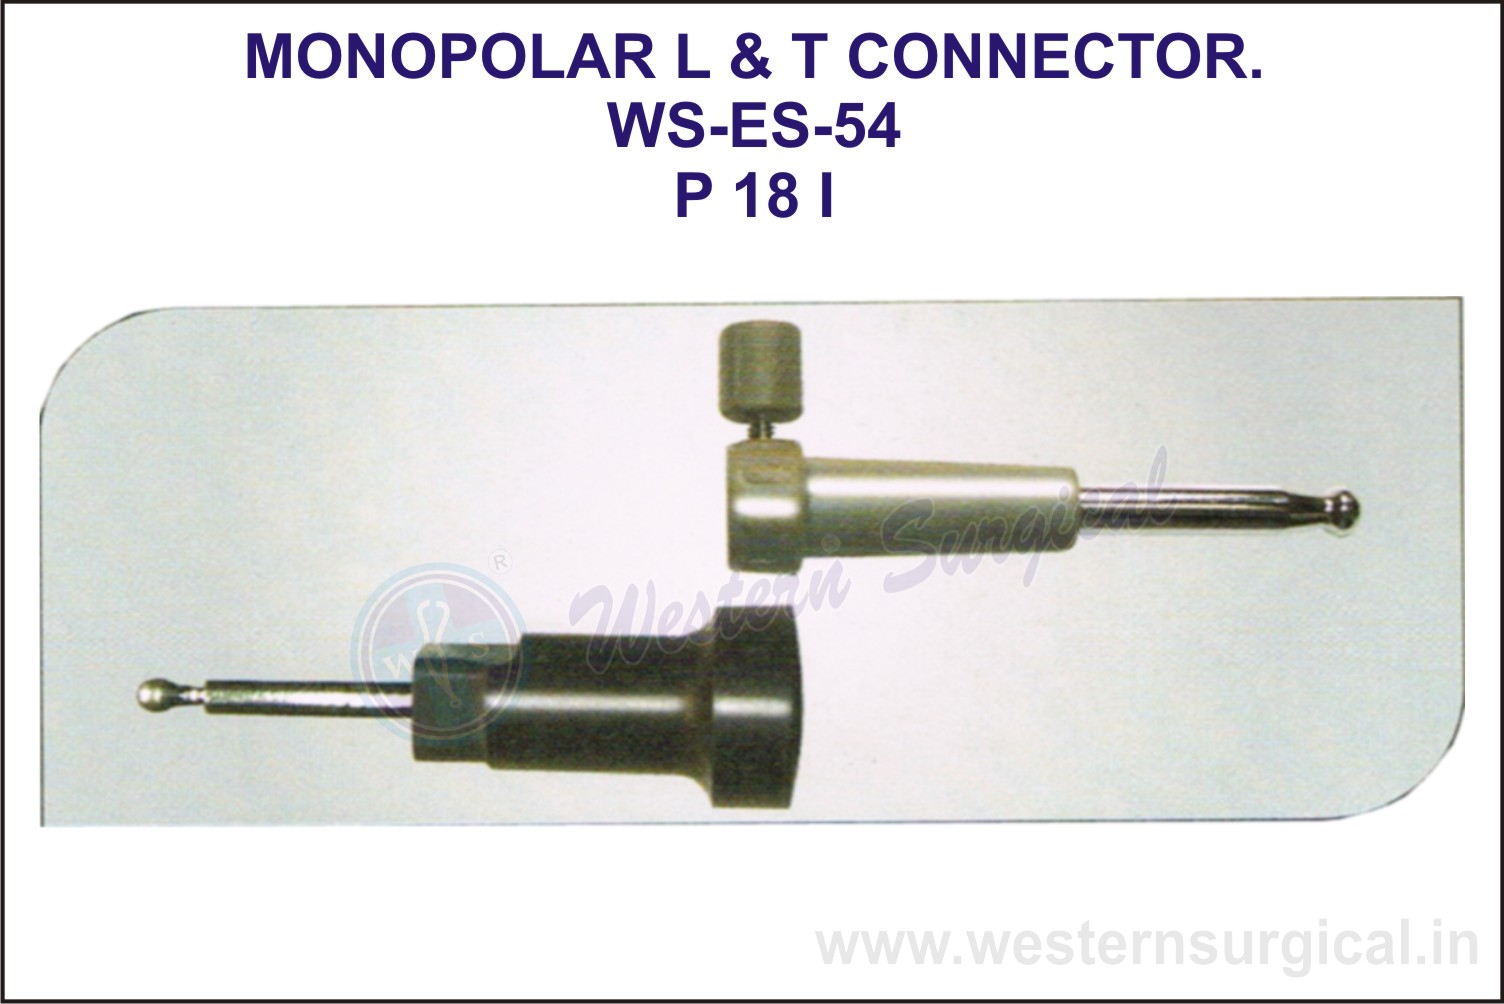 Monopolar L & T Connector